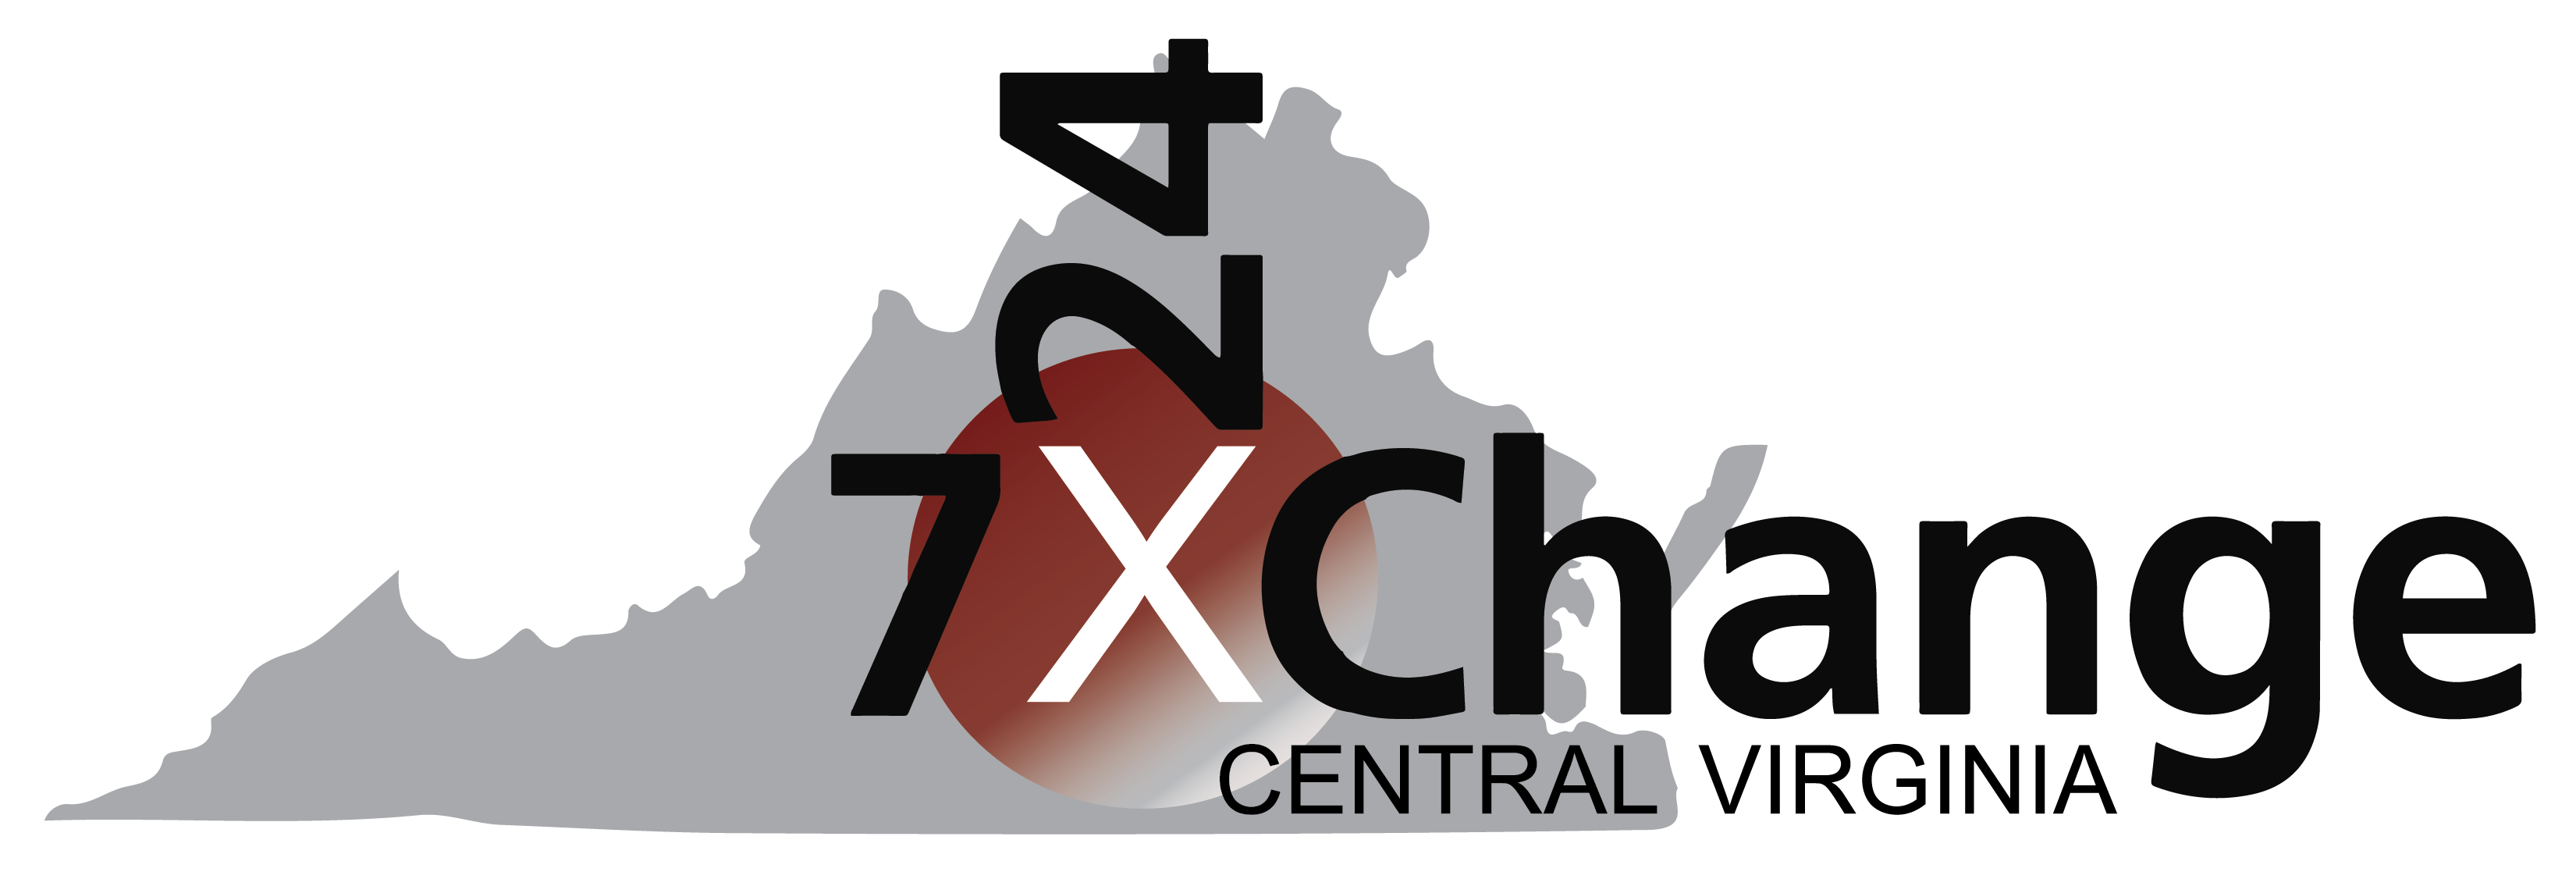 Central Virginia Logo